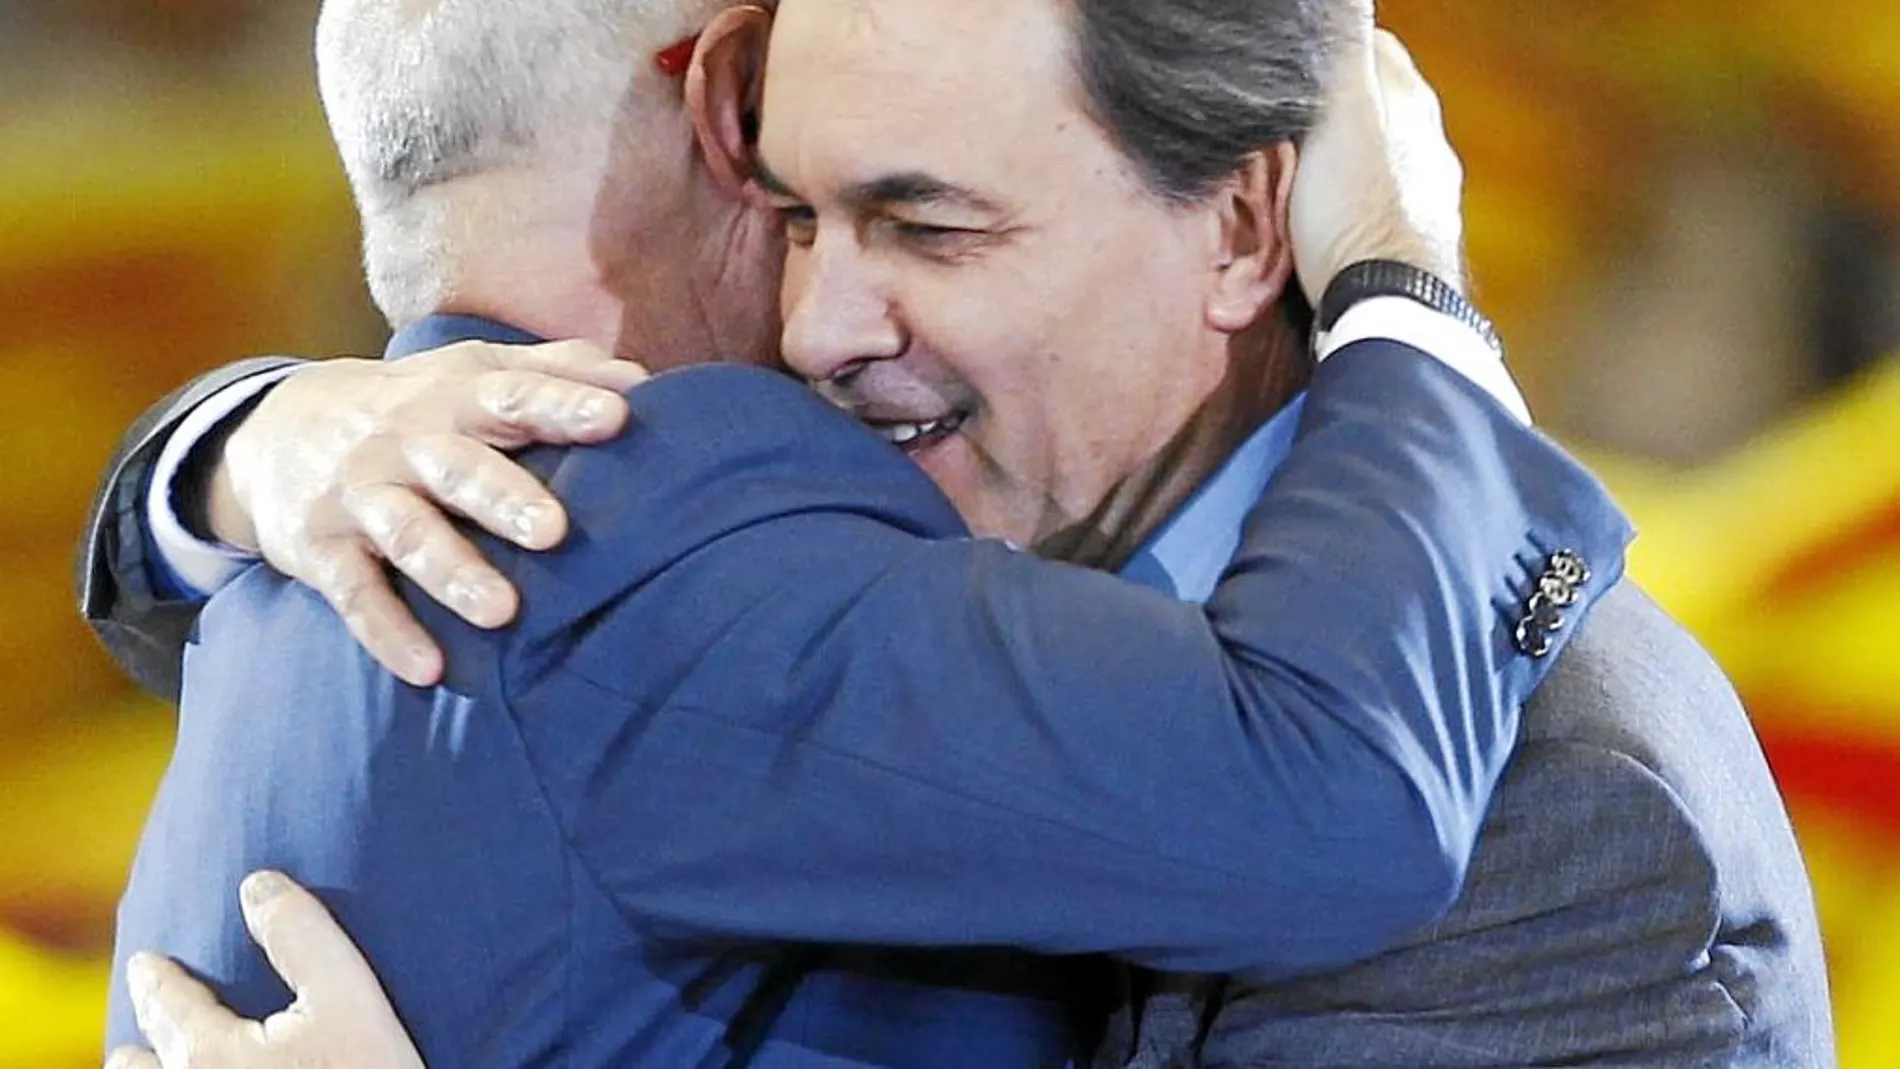 El presidente de la Generalitat catalana, Artur Mas, se abraza a su socio de coalición, Josep Antoni Durán Lleida